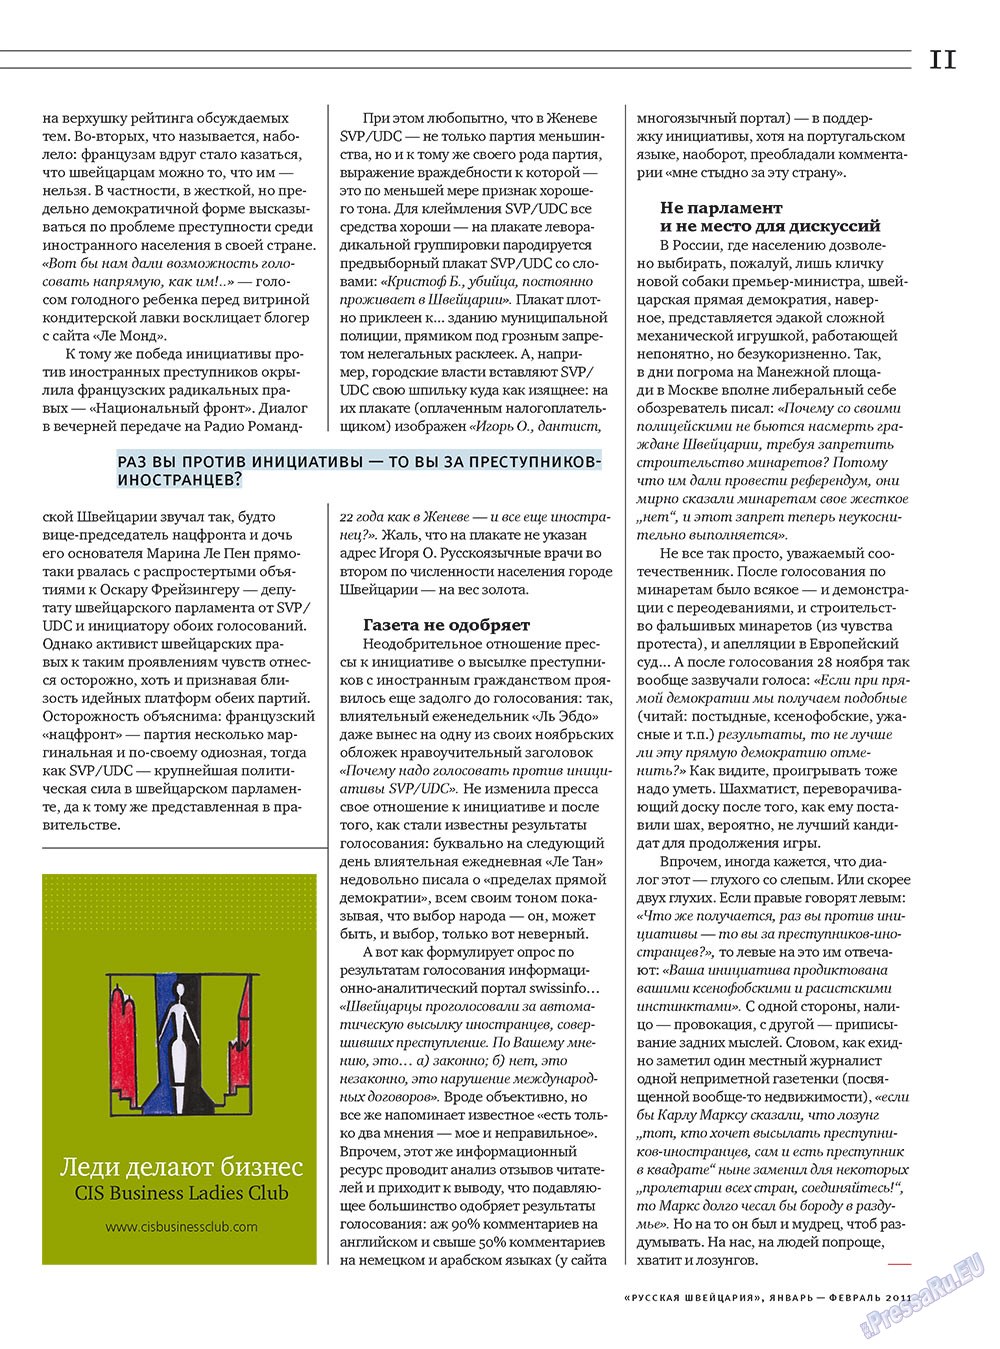 Russkaja Schweizaria (Zeitschrift). 2011 Jahr, Ausgabe 1, Seite 11